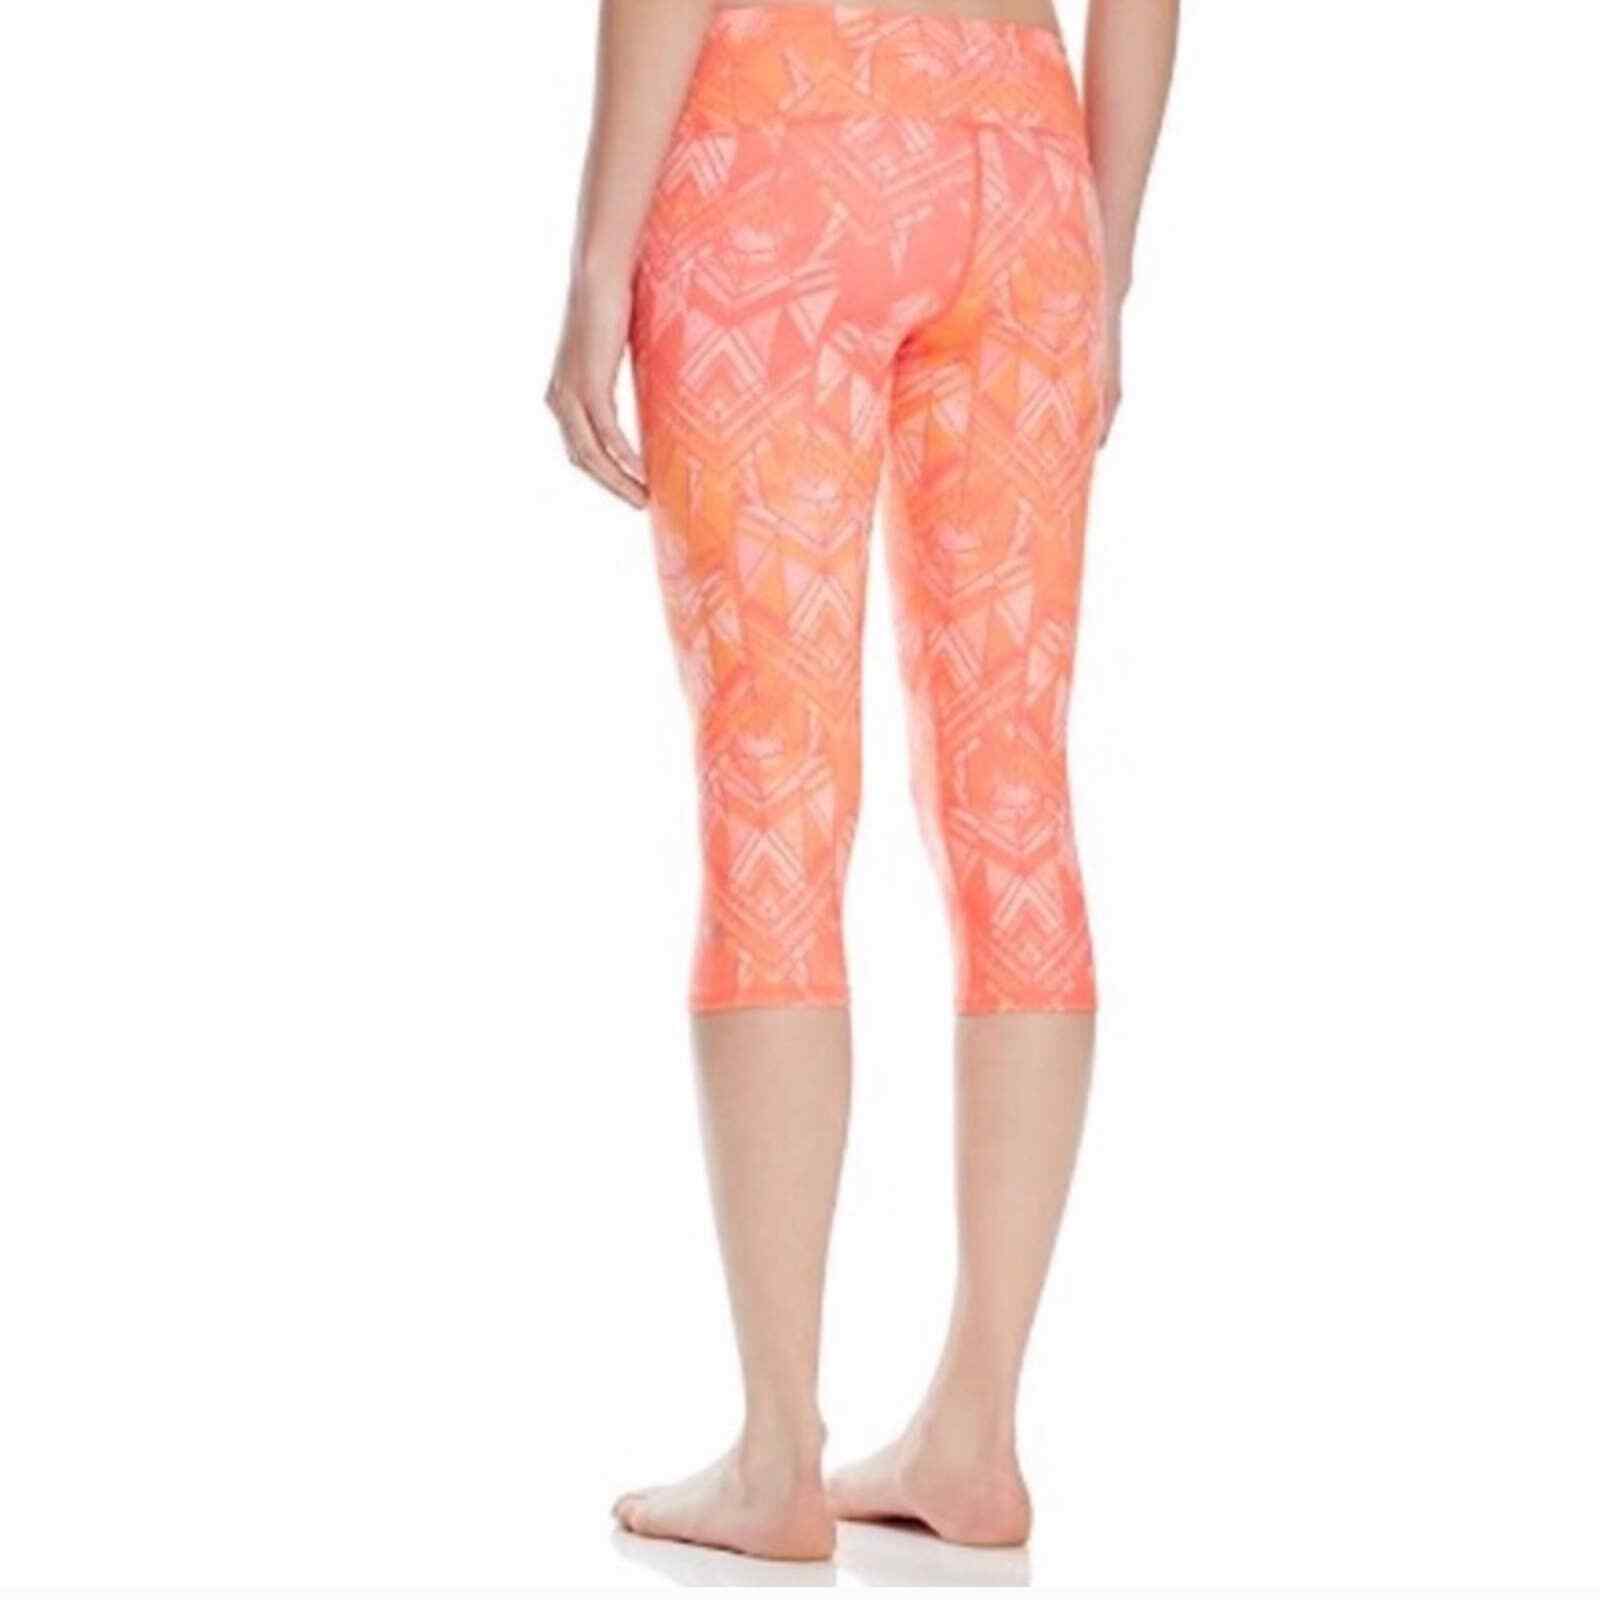 ALO Yoga Leggings Women's XS Orange Pattern Air Brushed Crop Geometric  Pocket | eBay